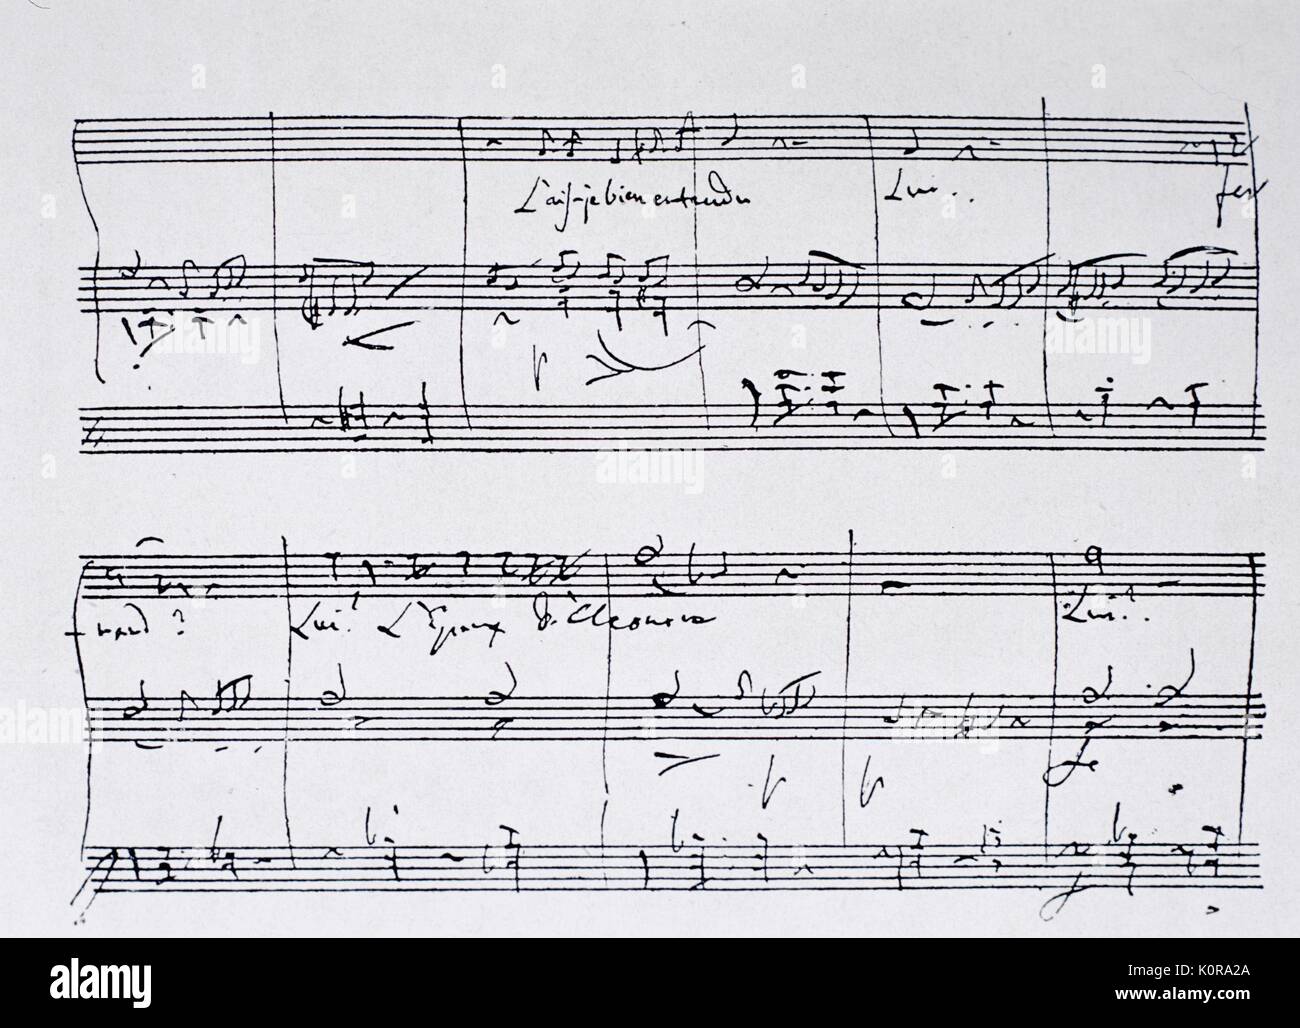 DONIZETTI - Musical autógrafo de La Favorita, Acto III, Leonora aria del compositor italiano (1797-1848) Foto de stock